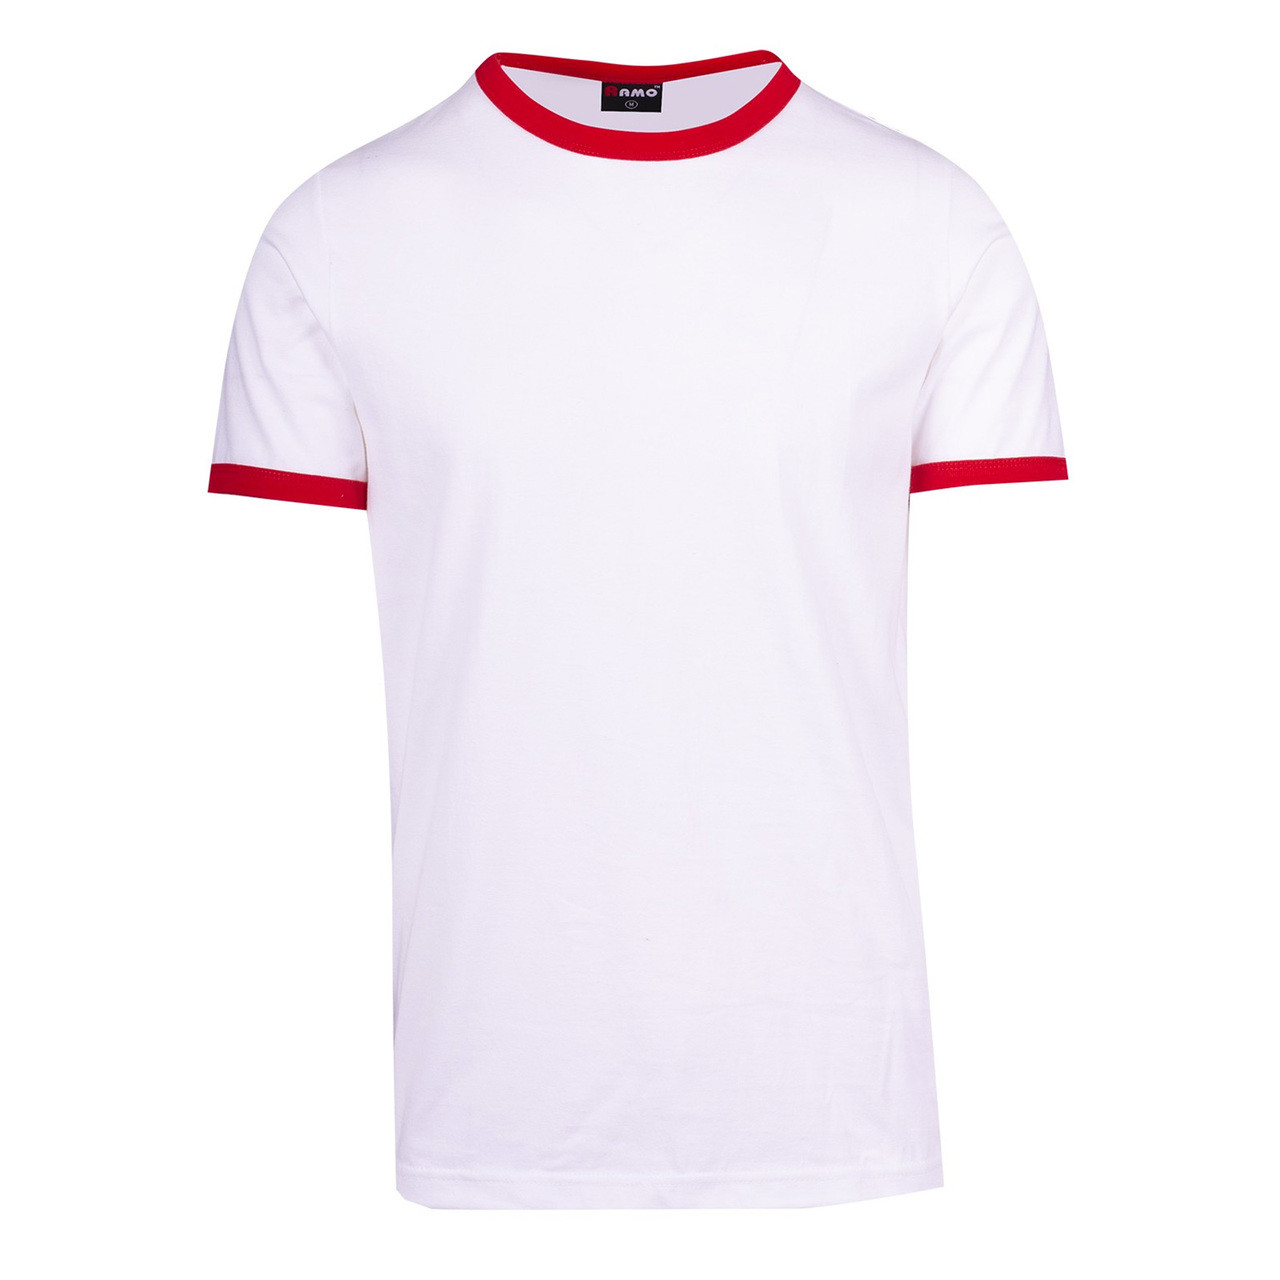 blank jersey shirts wholesale